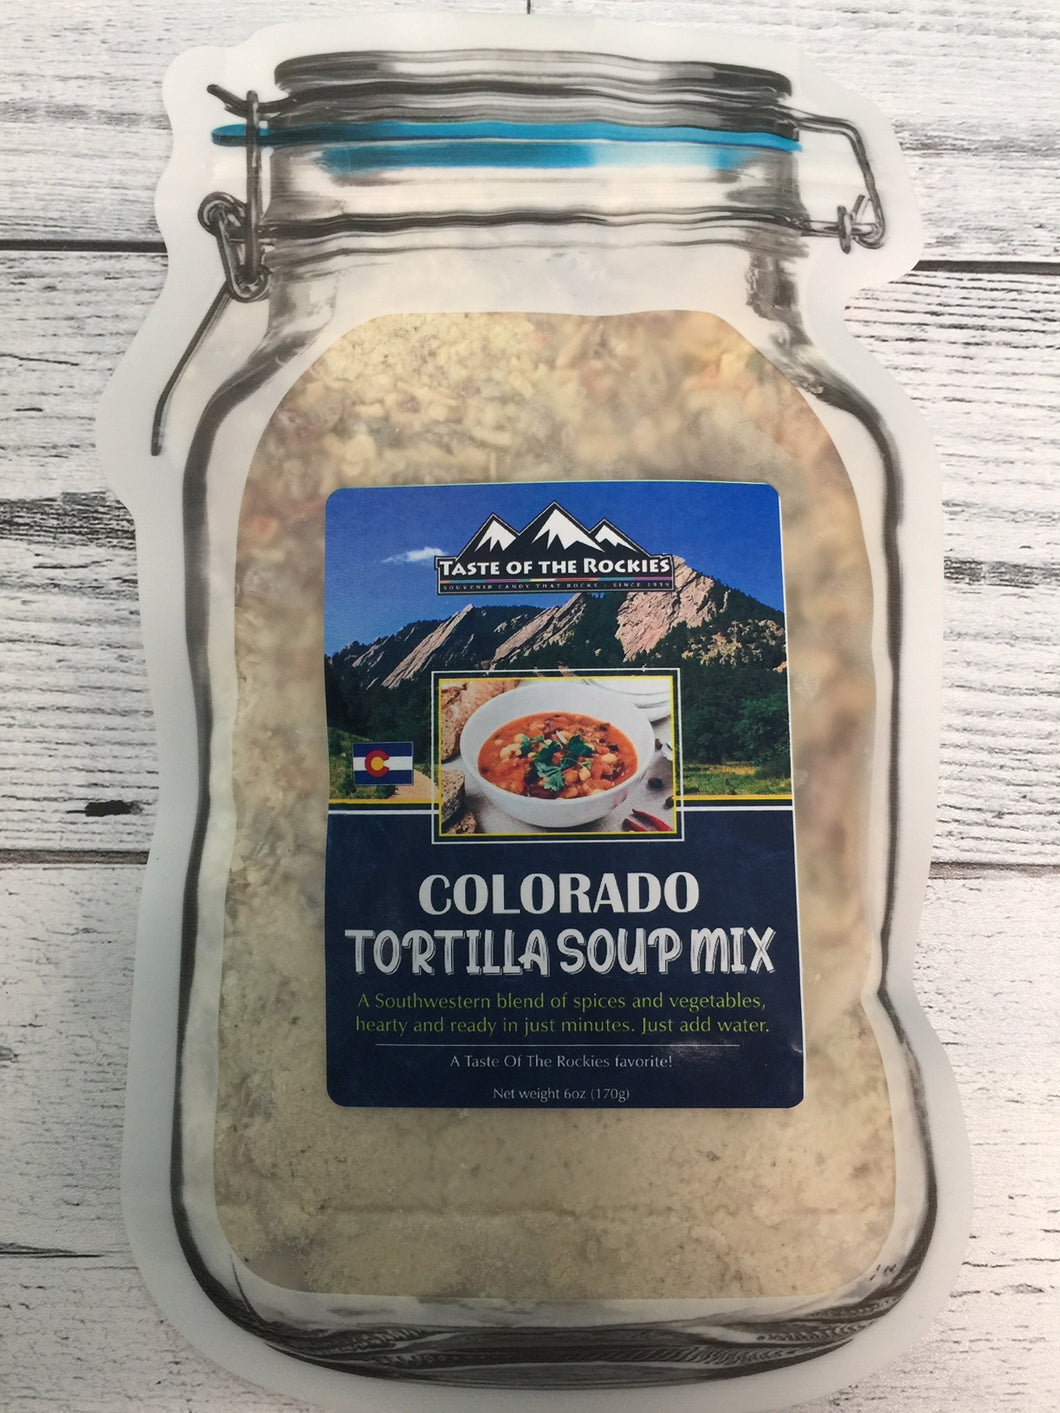 Colorado's Tortilla Soup Mix